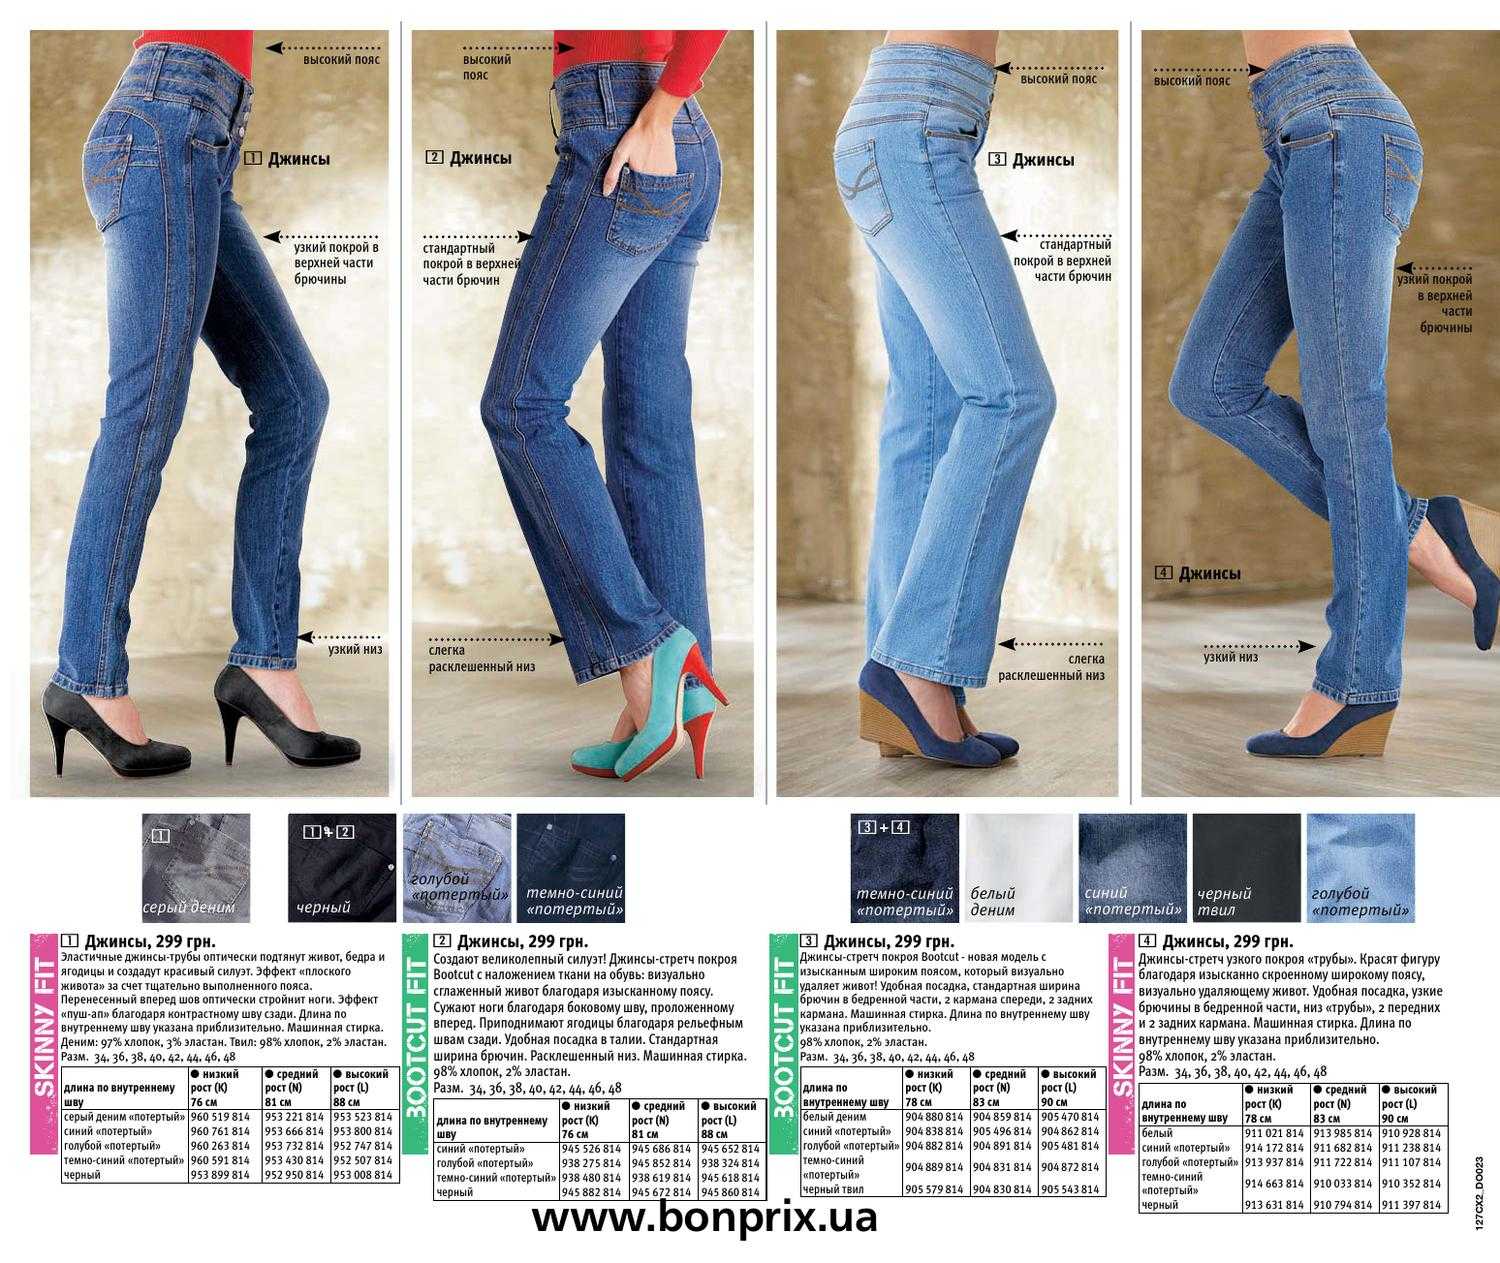 Селвидж деним – метод шитья джинсов